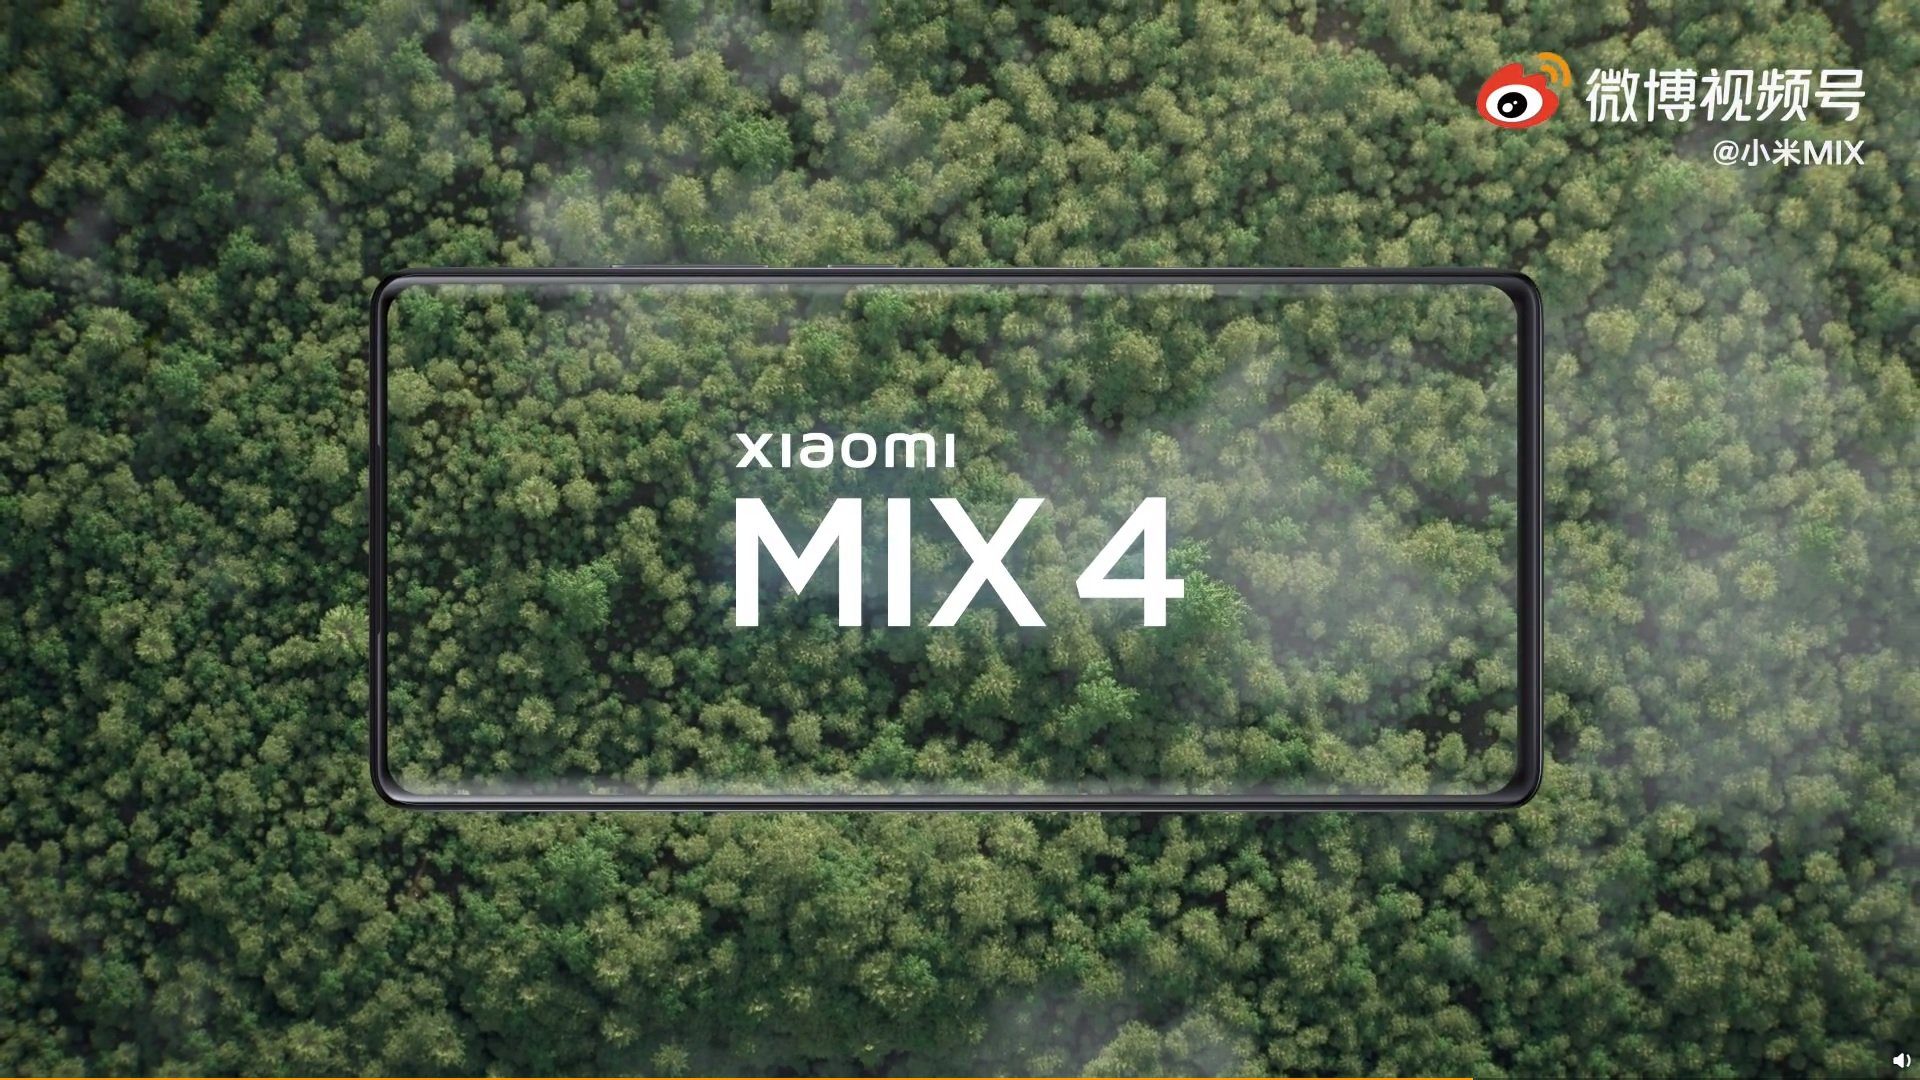 Xiaomi Mi MIX 4-Spezifikation vor der Premiere enthüllt! 44